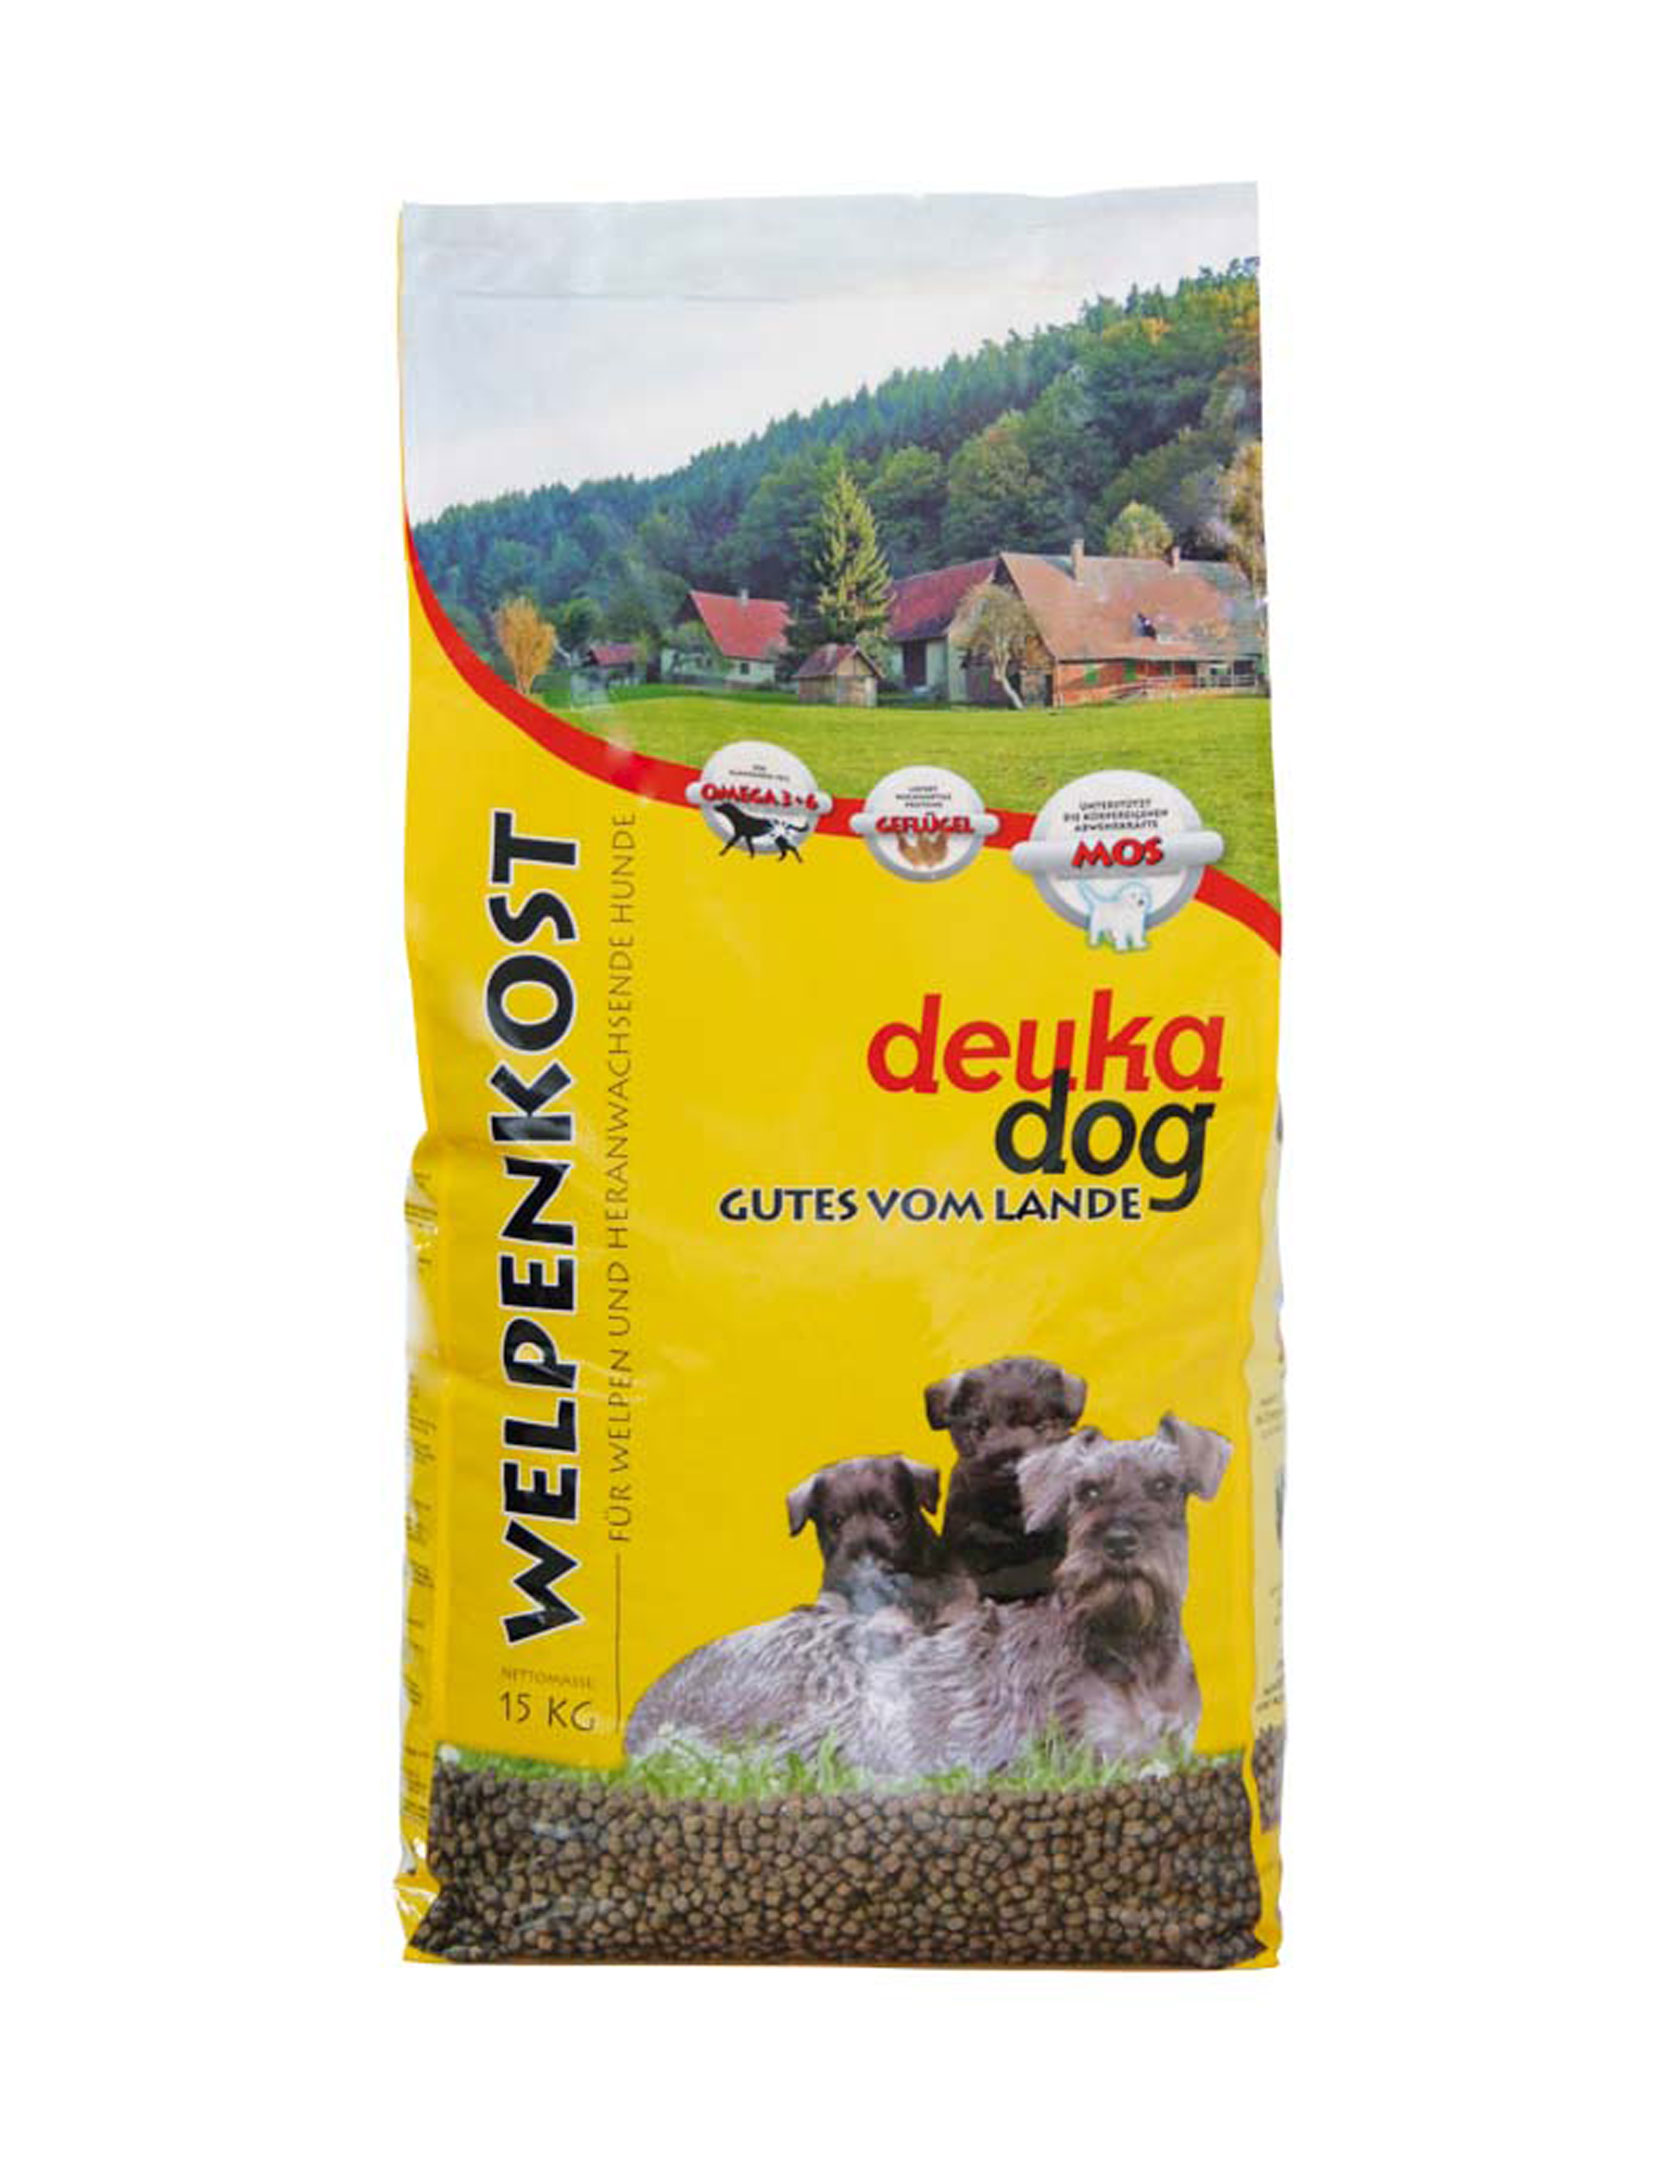 DEUKA DOG Welpenkost 15 kg - für Welpen und heranwachsende Hunde